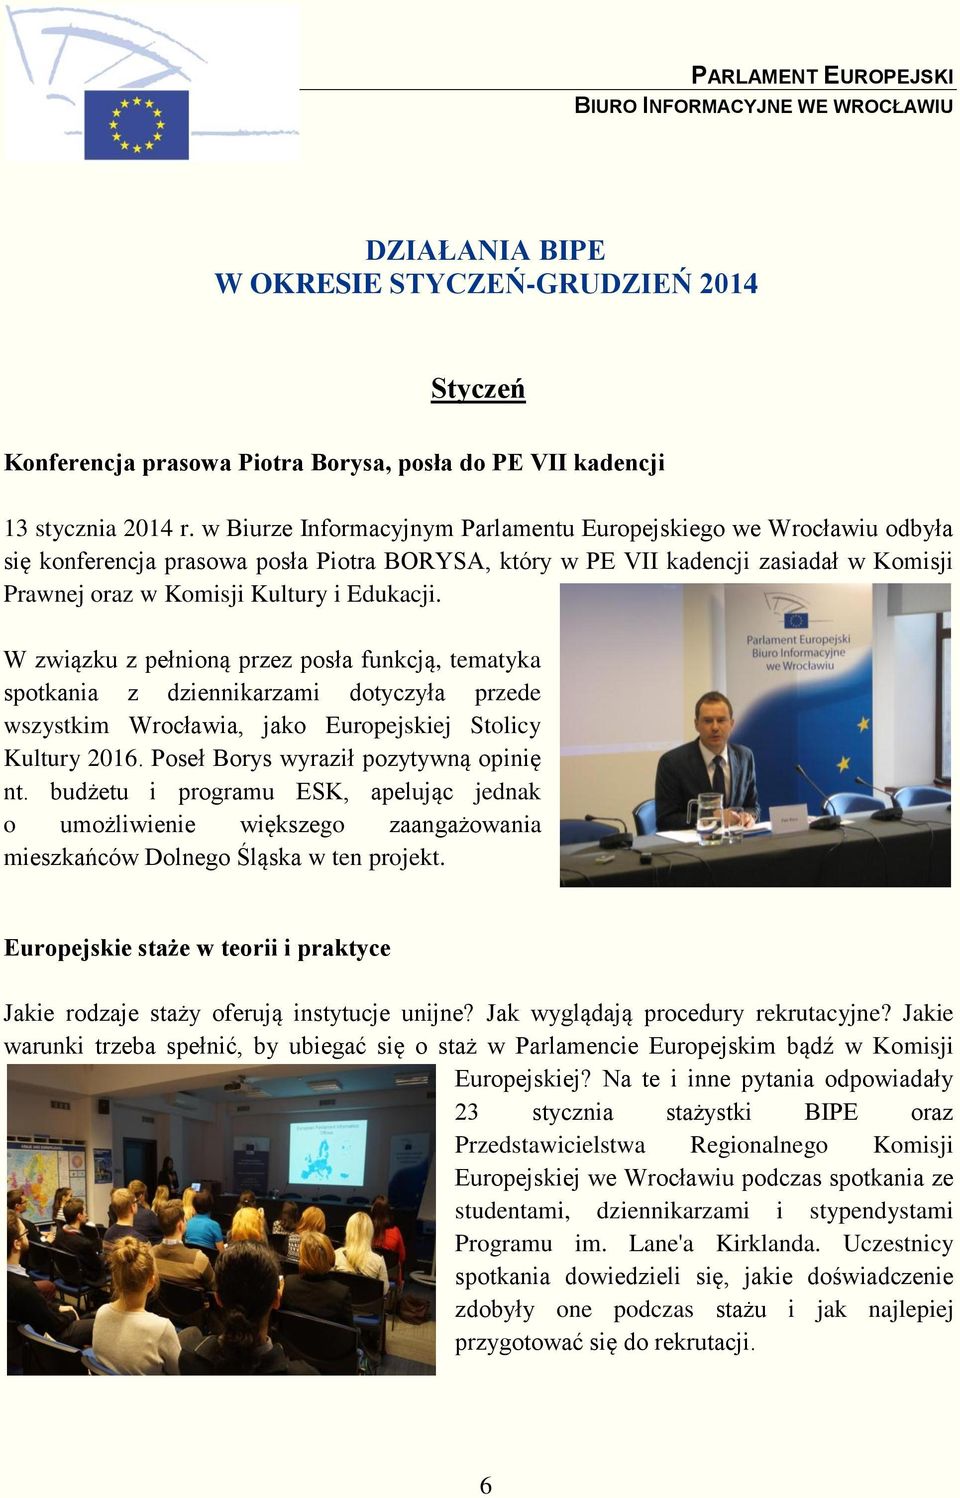 W związku z pełnioną przez posła funkcją, tematyka spotkania z dziennikarzami dotyczyła przede wszystkim Wrocławia, jako Europejskiej Stolicy Kultury 2016. Poseł Borys wyraził pozytywną opinię nt.